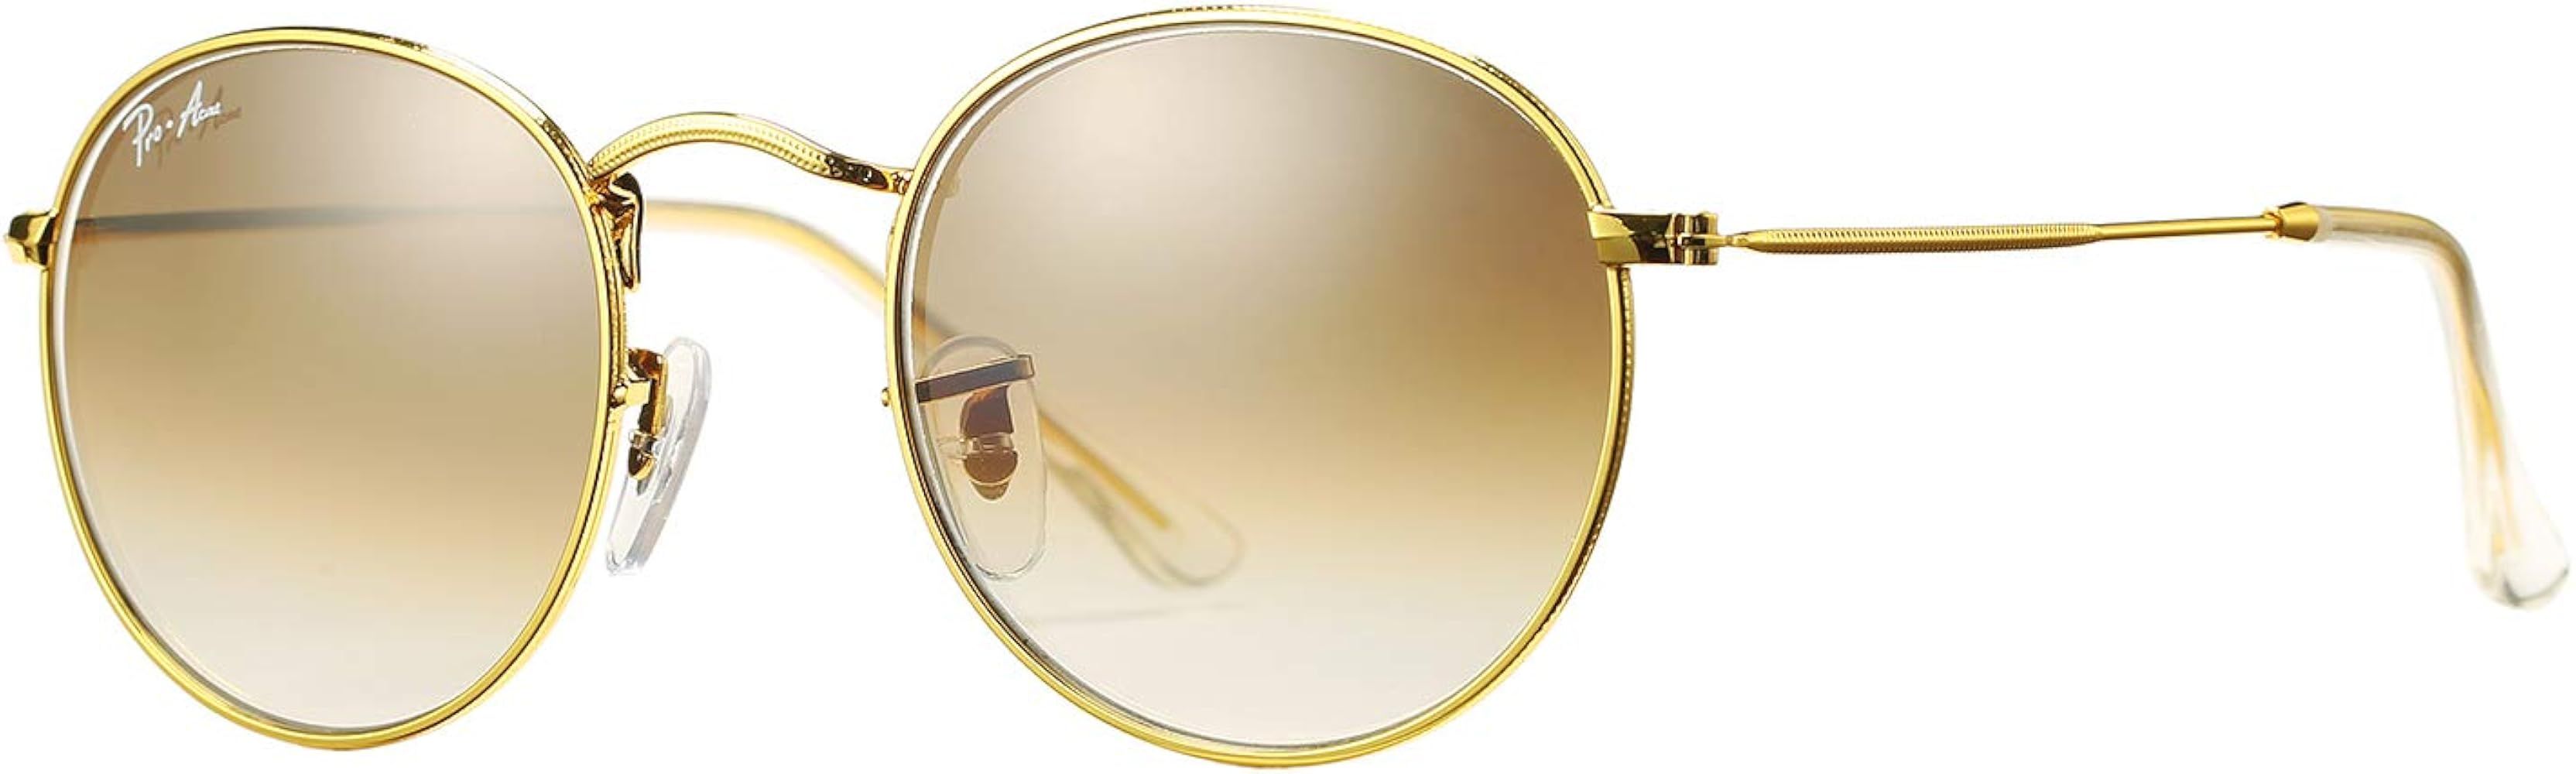 Pro Acme Small Round Sunglasses for Women Men Classic Retro Circle Metal SunGlasses Non-Polarized... | Amazon (US)